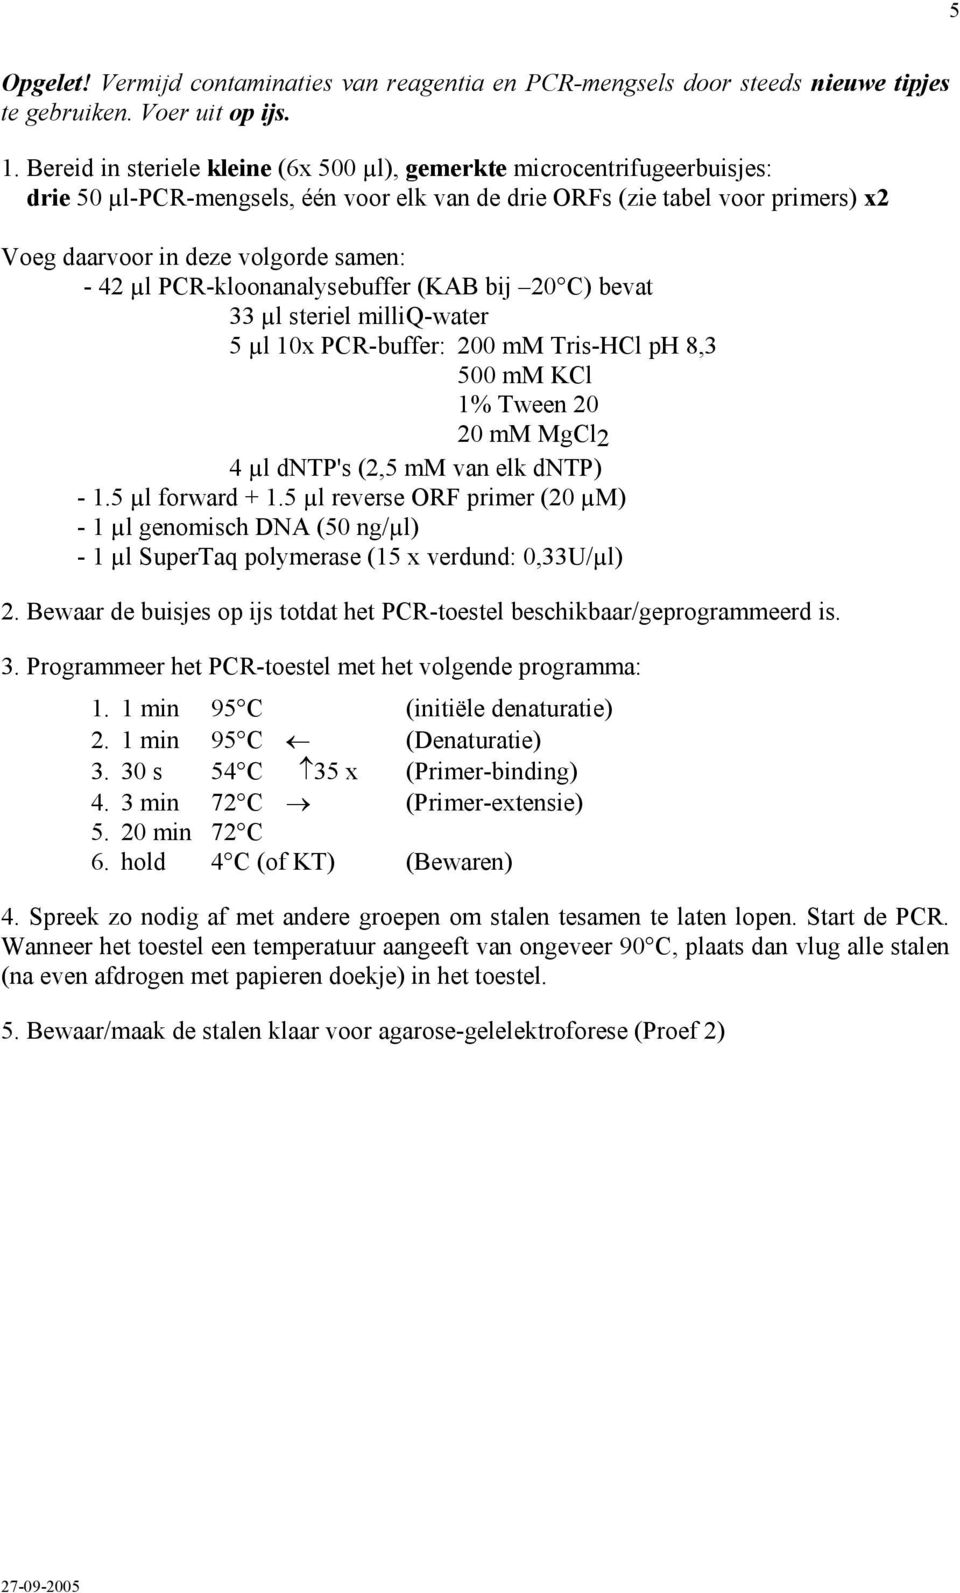 µl PCR-kloonanalysebuffer (KAB bij 20 C) bevat 33 µl steriel milliq-water 5 µl 10x PCR-buffer: 200 mm Tris-HCl ph 8,3 500 mm KCl 1% Tween 20 20 mm MgCl2 4 µl dntp's (2,5 mm van elk dntp) - 1.